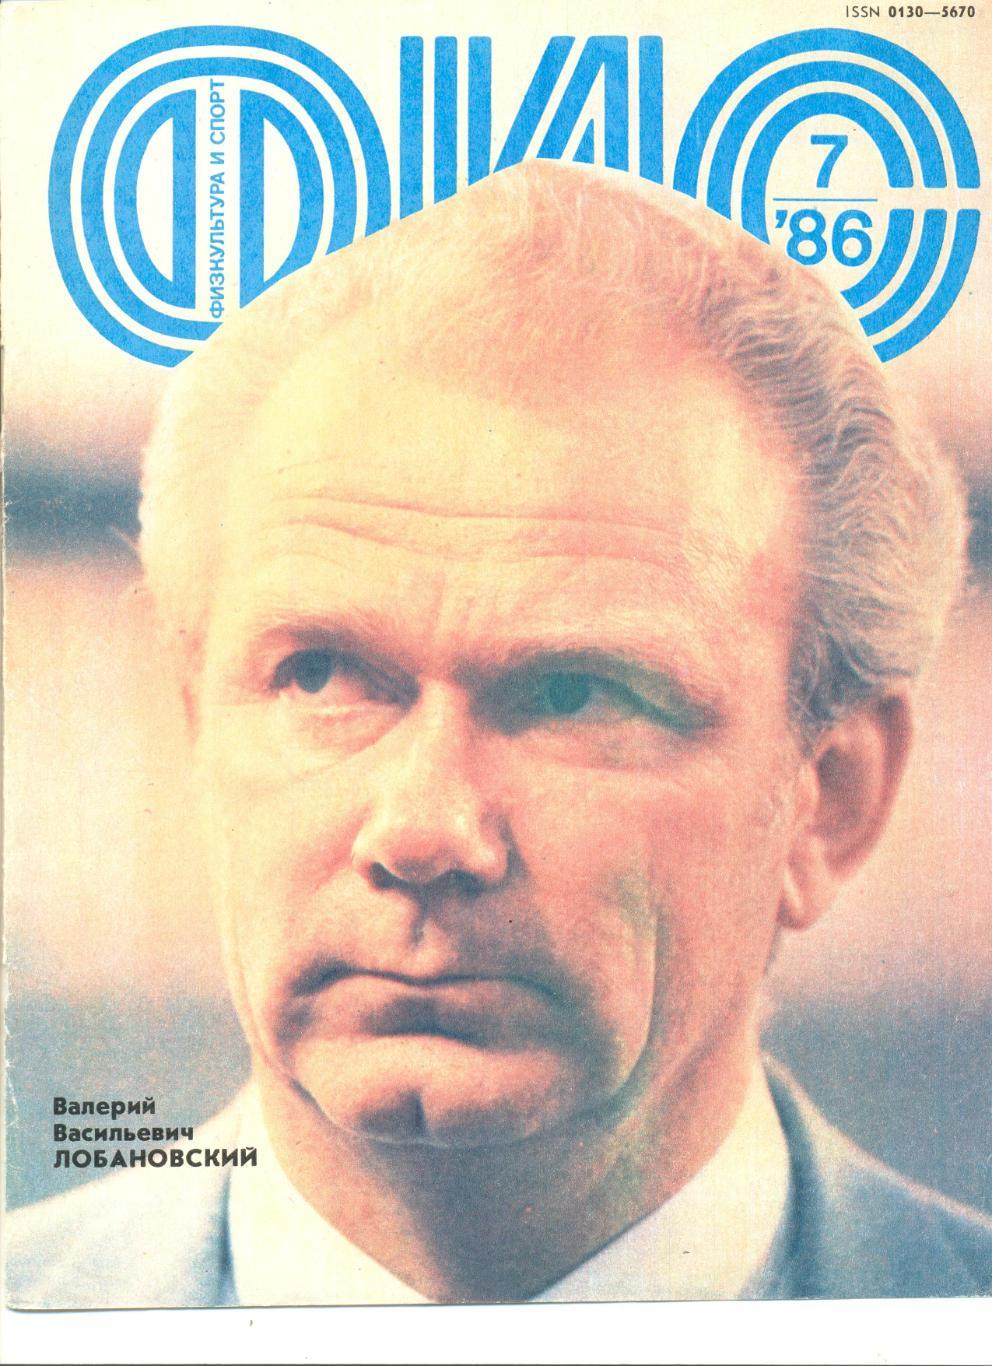 Постер-обложка журнала Физкультура и Спорт 1986 г. Валерий Лобановский.